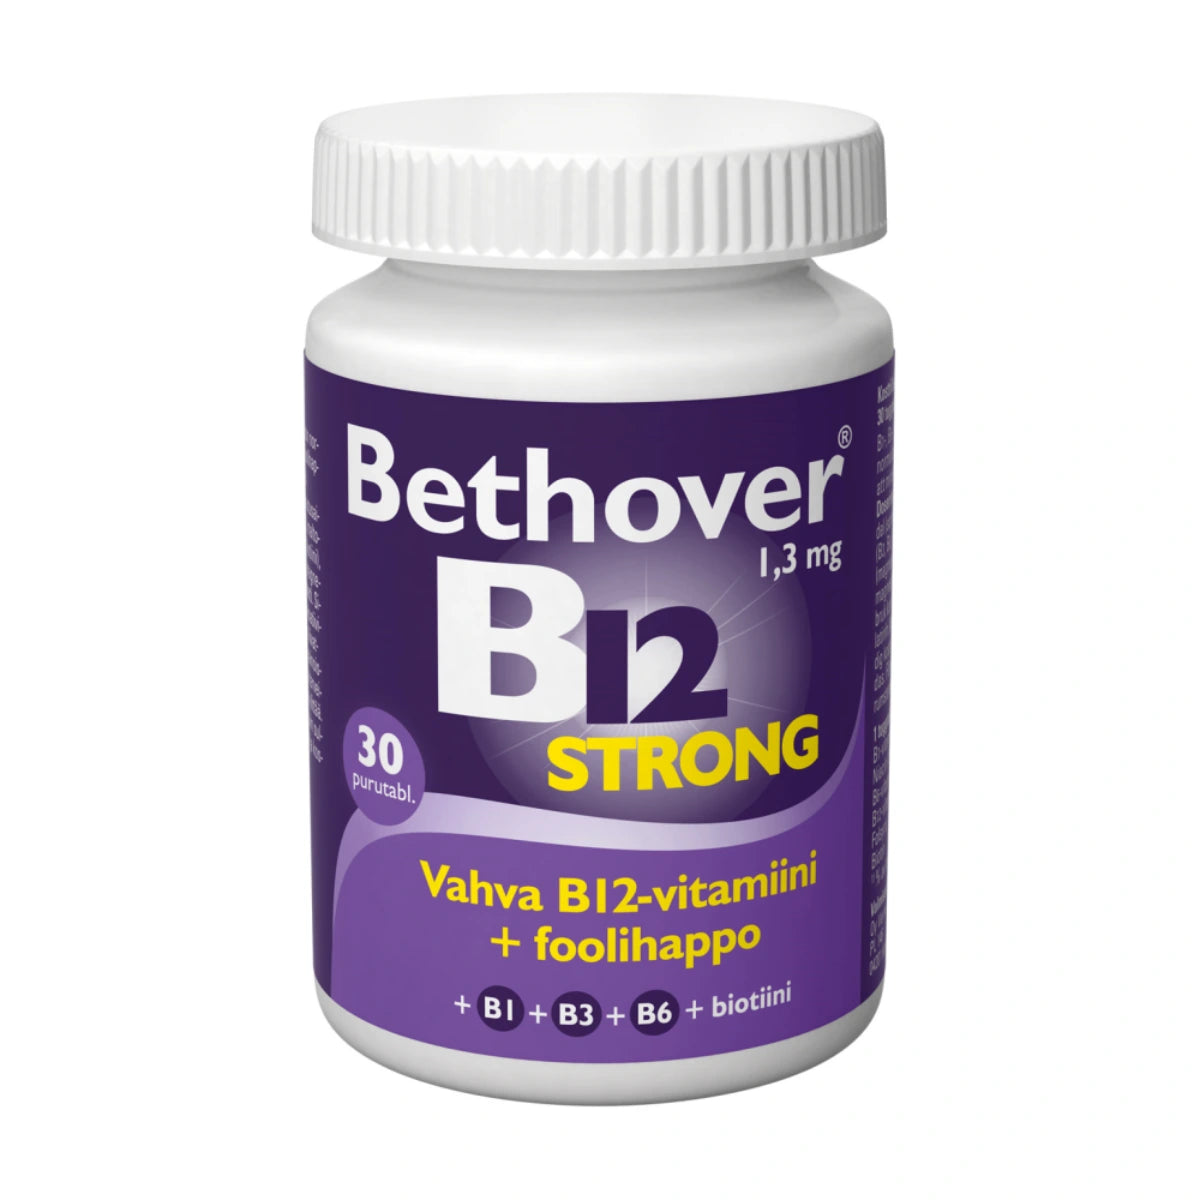 BETHOVER Strong B12 mansikka tabletti 30 kpl vahva ja monipuolinen B12-vitamiinivalmiste mansikanmakuisena purutablettina